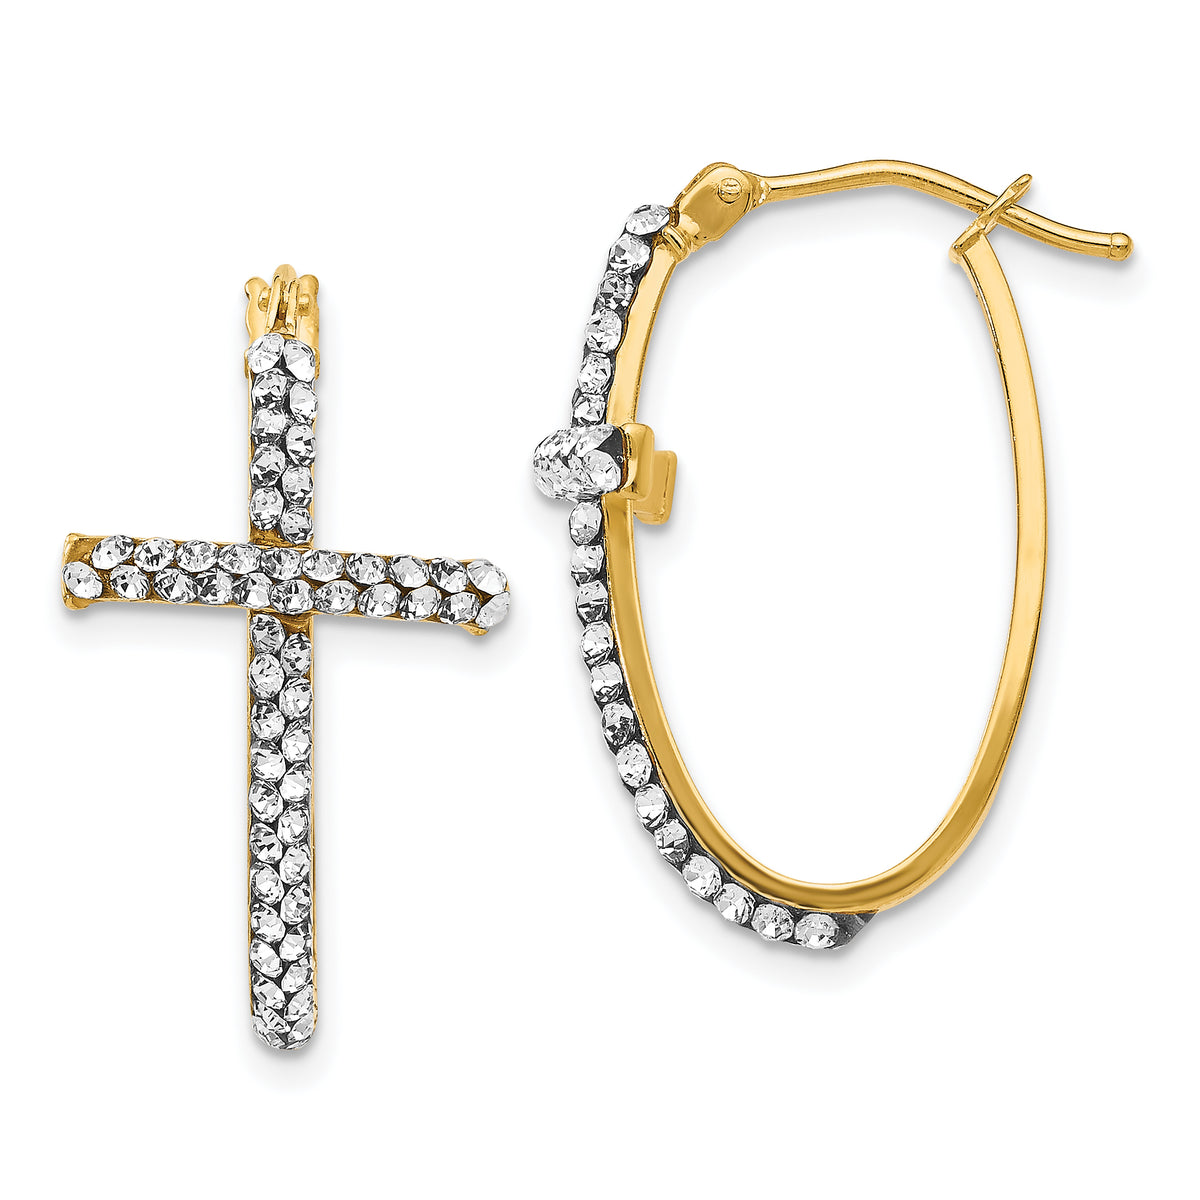 14K Crystals from Swarovski Polished Cross Hoop Earrings